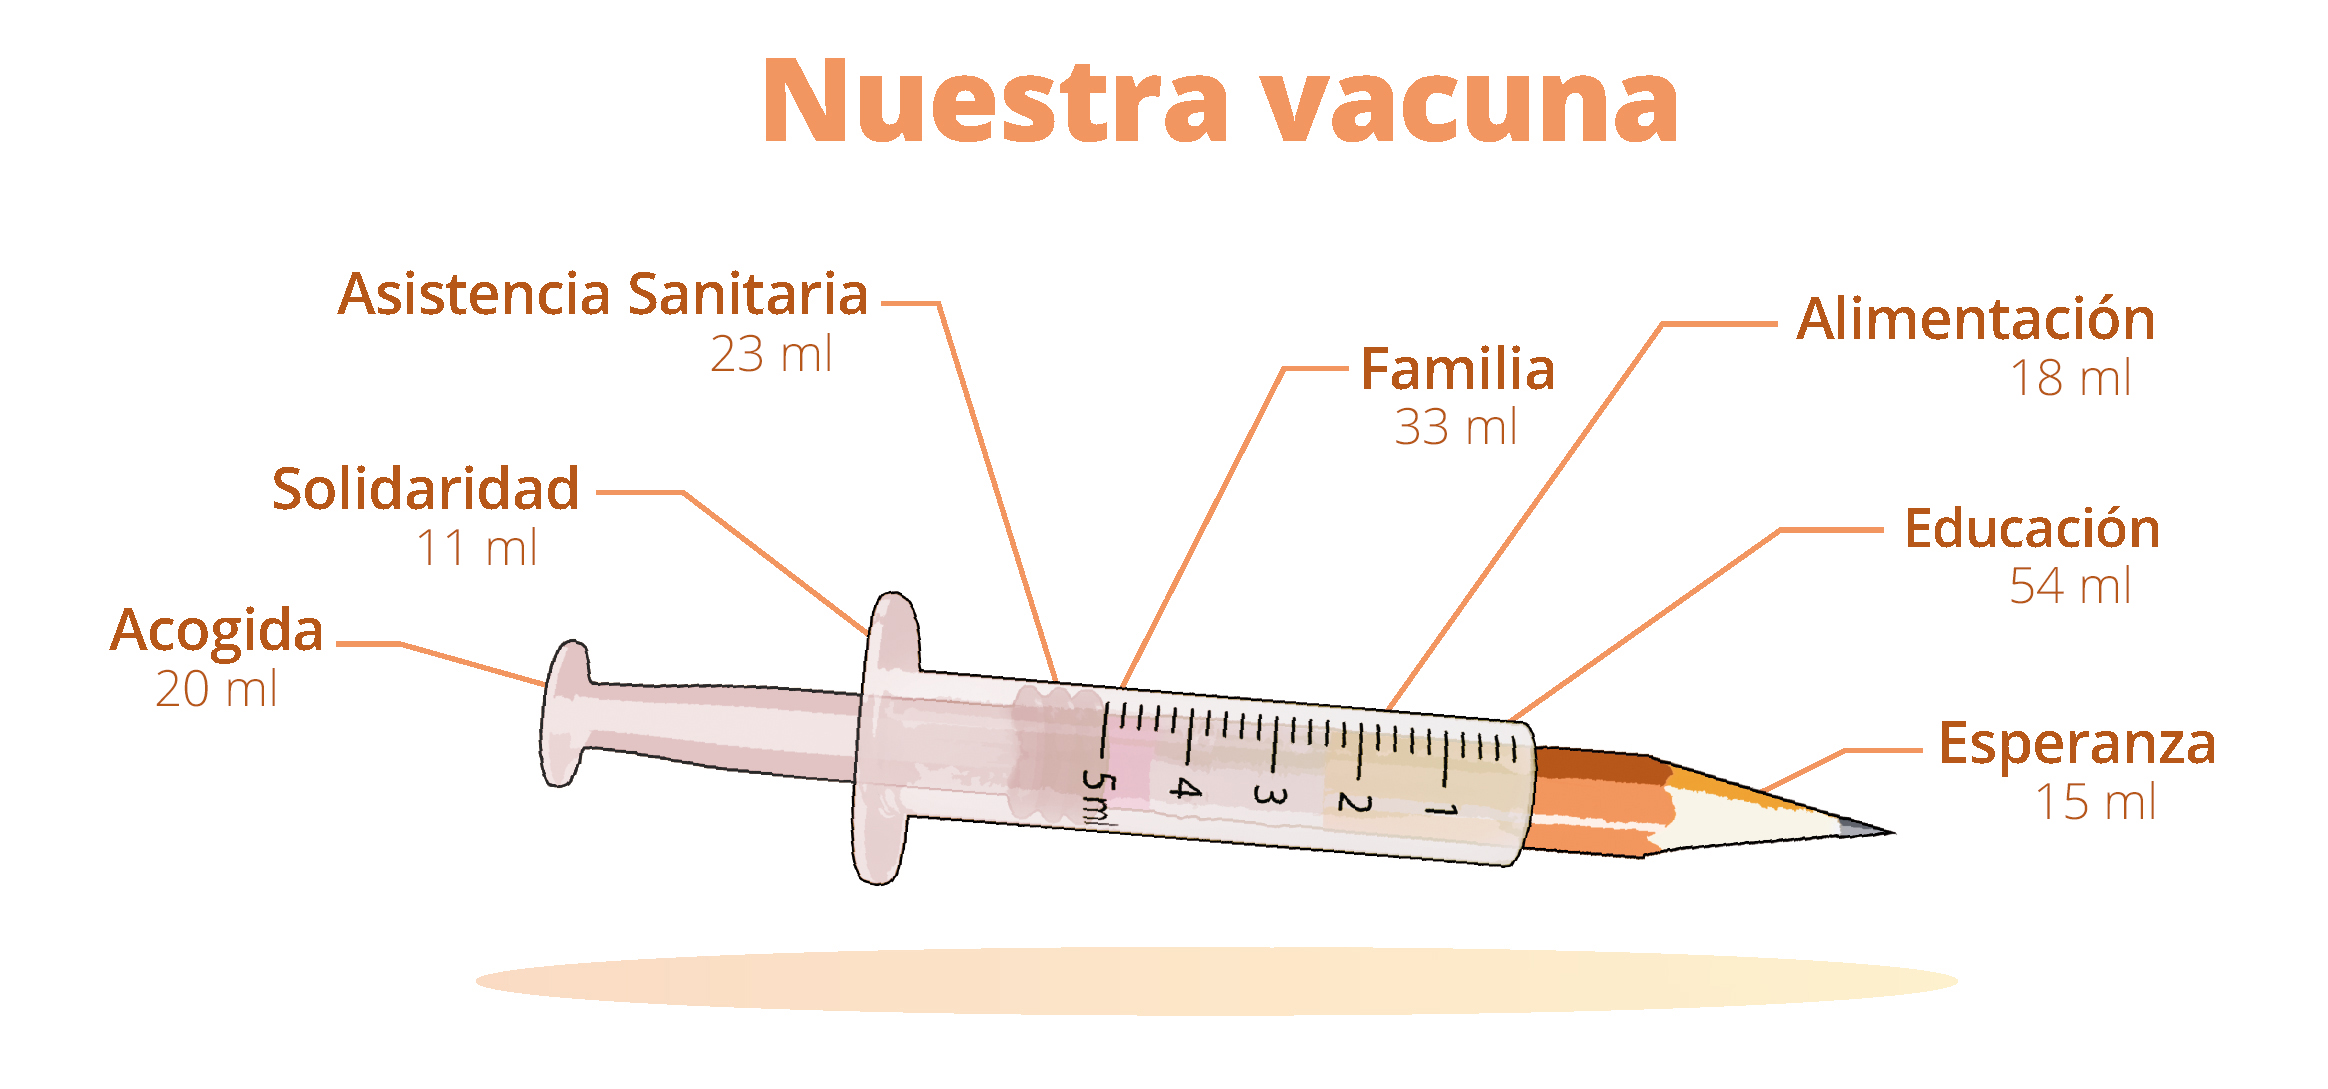 La mejor vacuna contra la pobreza